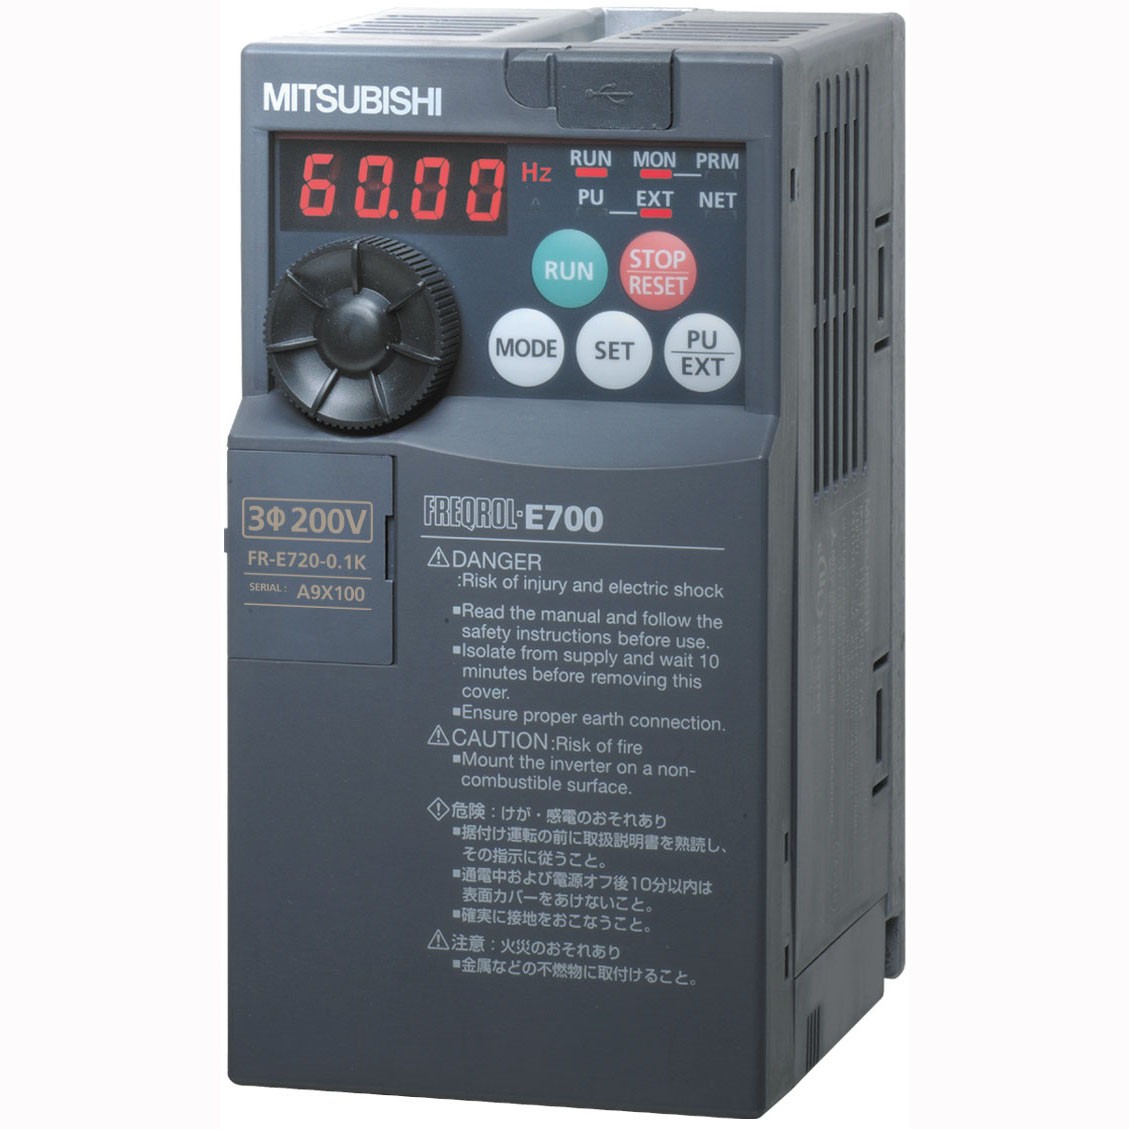  FR-E740-0.75K-CHT 三菱变频器E740-0.75K价格好 3相400V电源